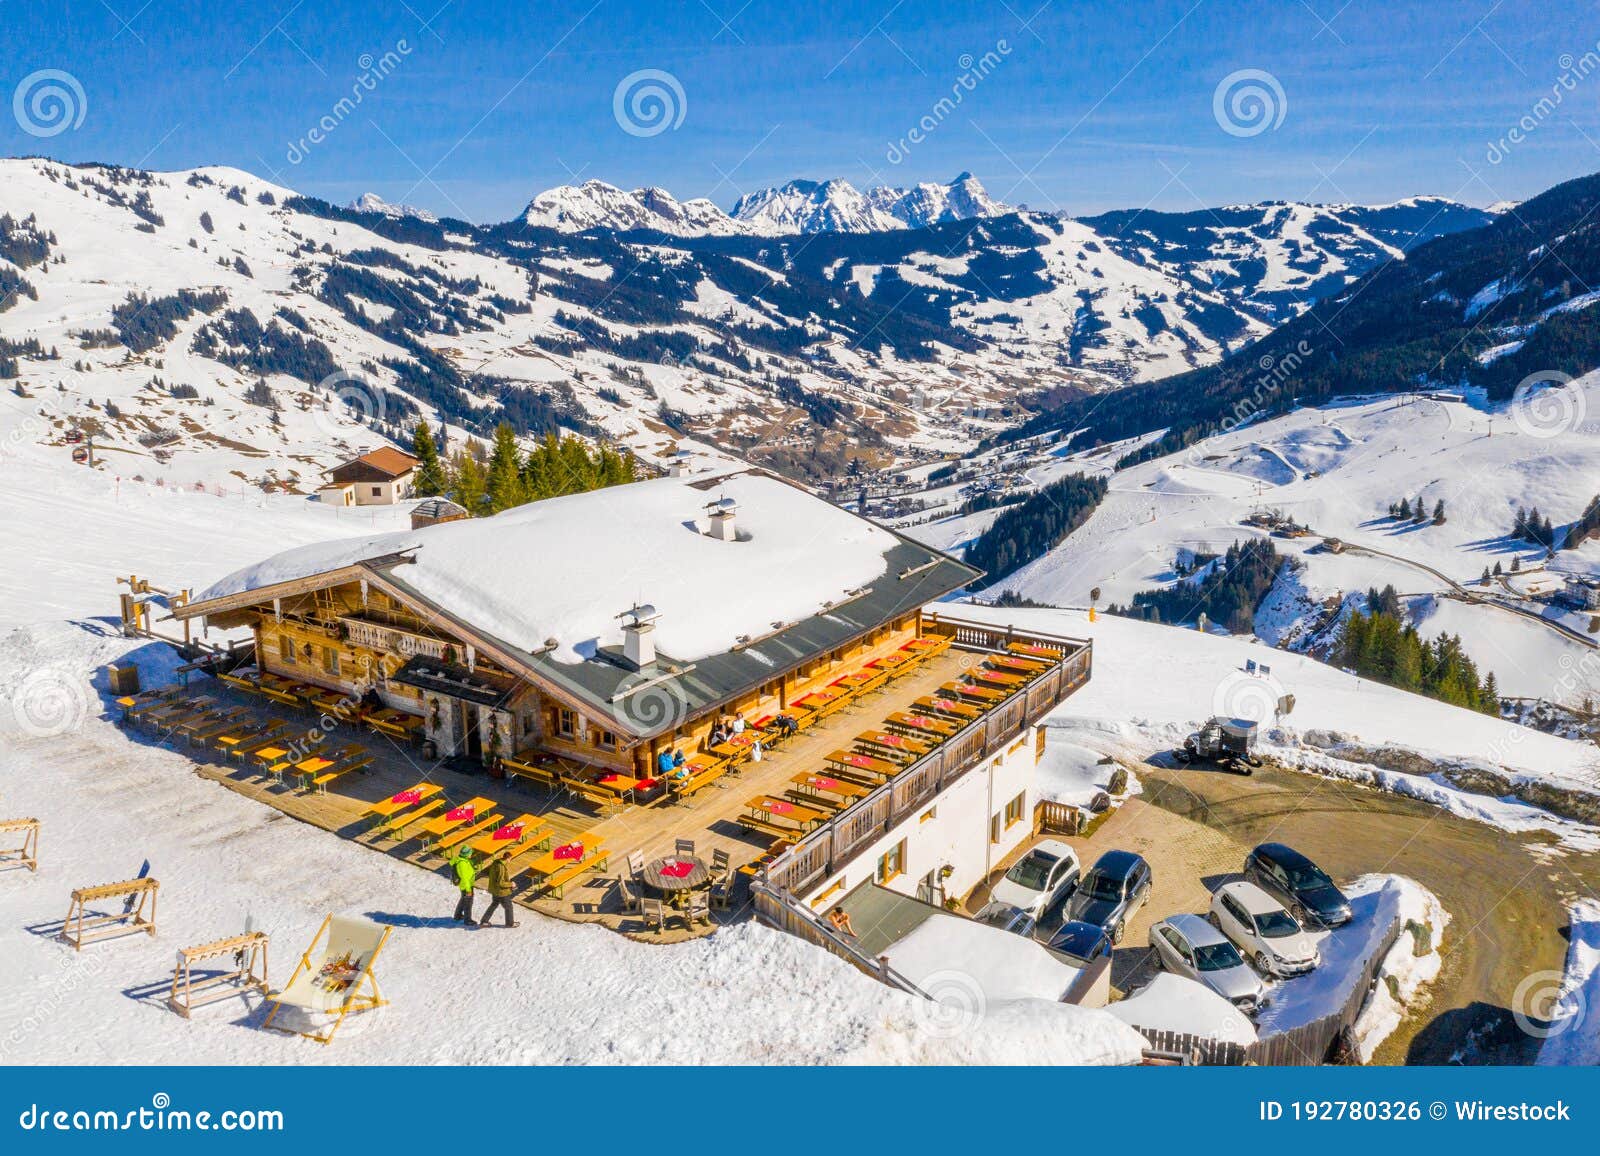 aerial shot of saalbach-hinterglemm alpine resort town in  austria